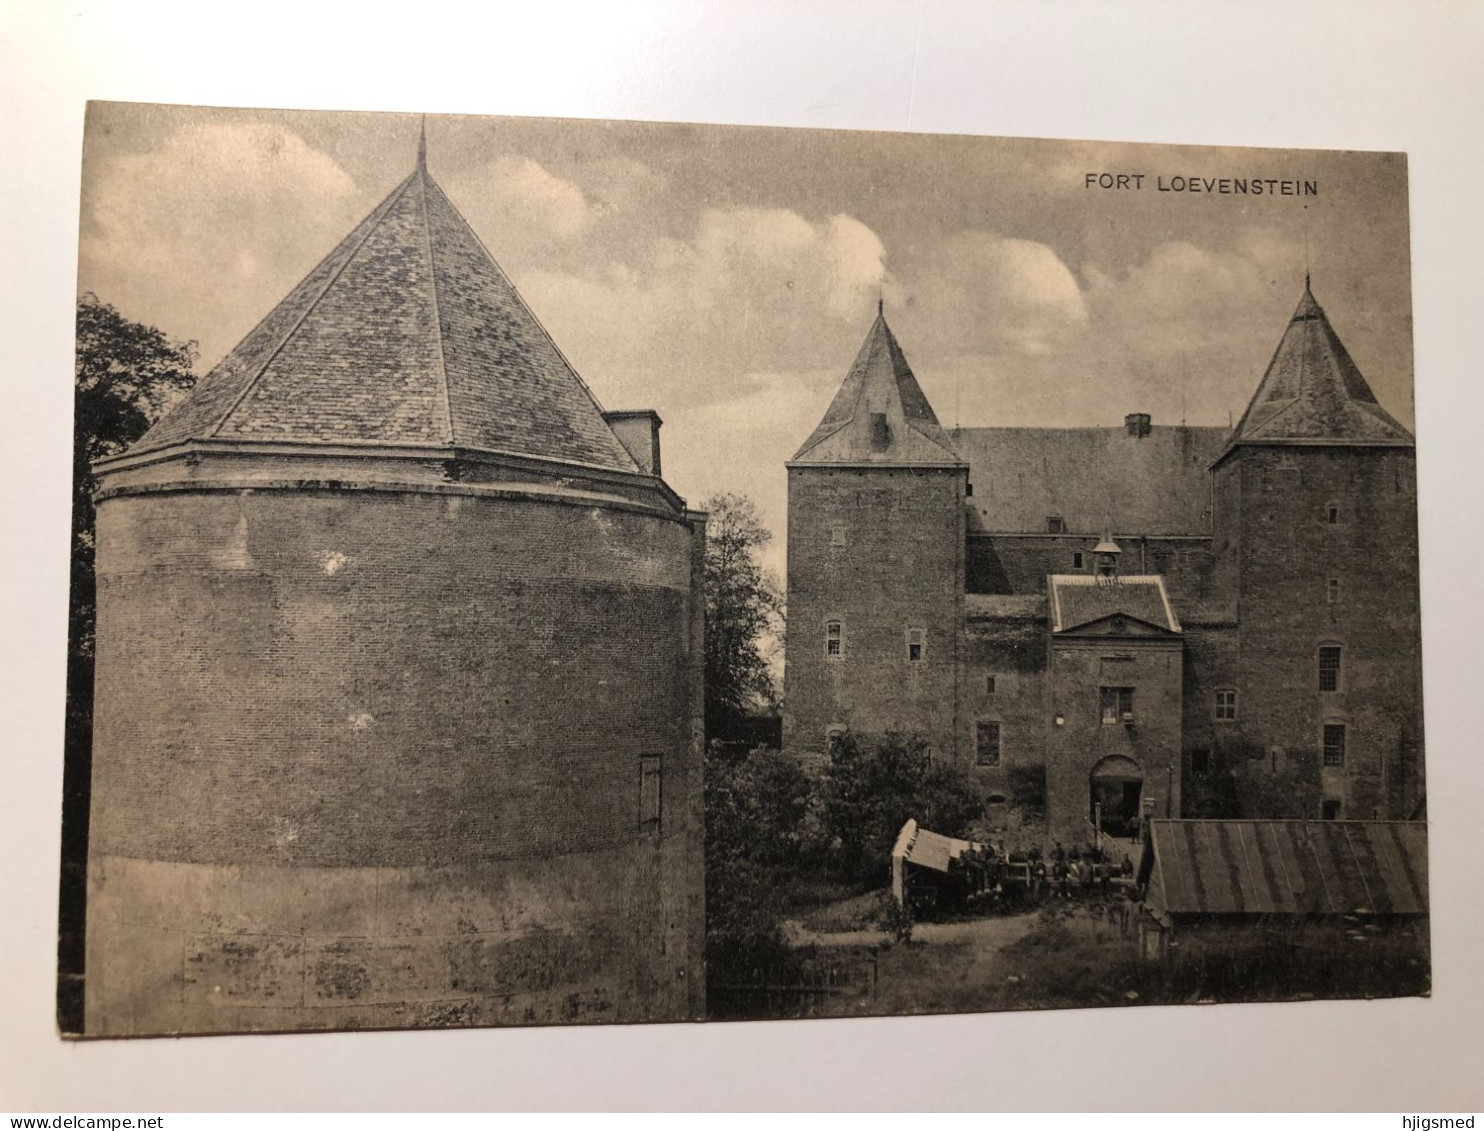 Netherlands Nederland Zaltbommel Fort Loevenstein Soldier Castle Briefkaart Gelderland 16846 Post Card POSTCARD - Zaltbommel